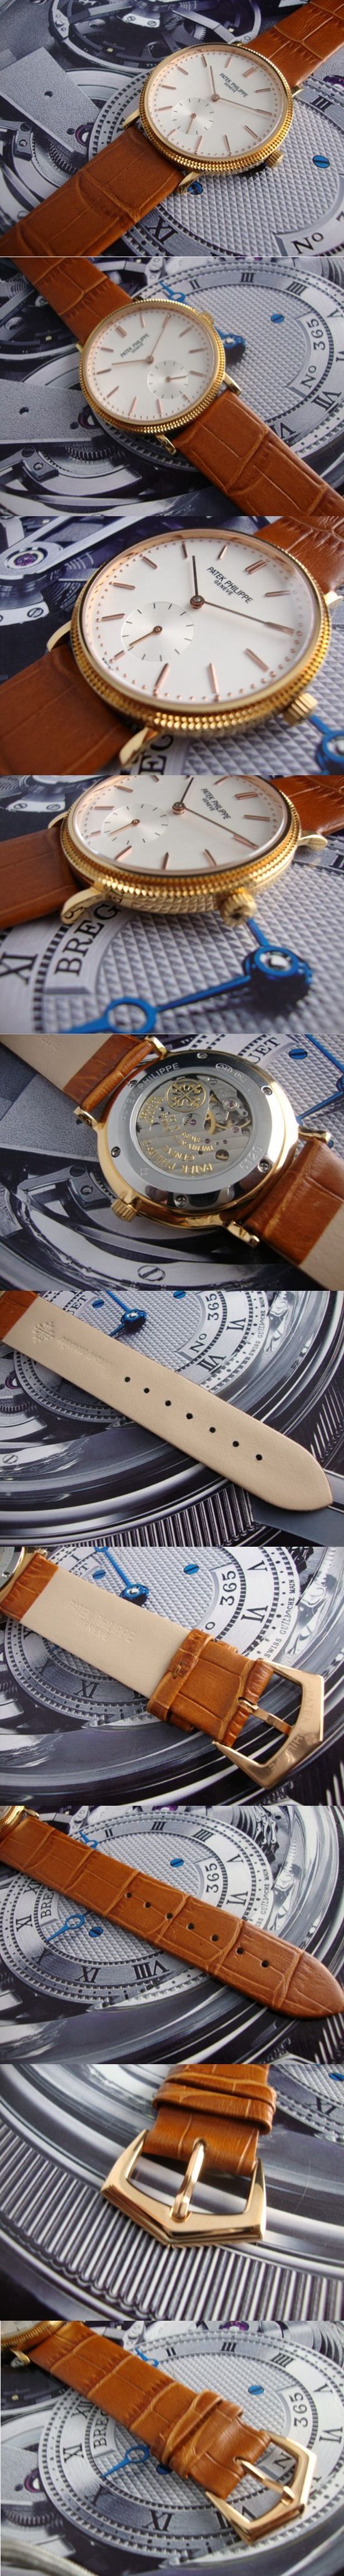 おしゃれなブランド時計がPATEK PHILIPPE-パテック フィリップ腕時計 パテック フィリップ 男/女腕時計 PATEK-PHILIPPE-N-011A を提供します.